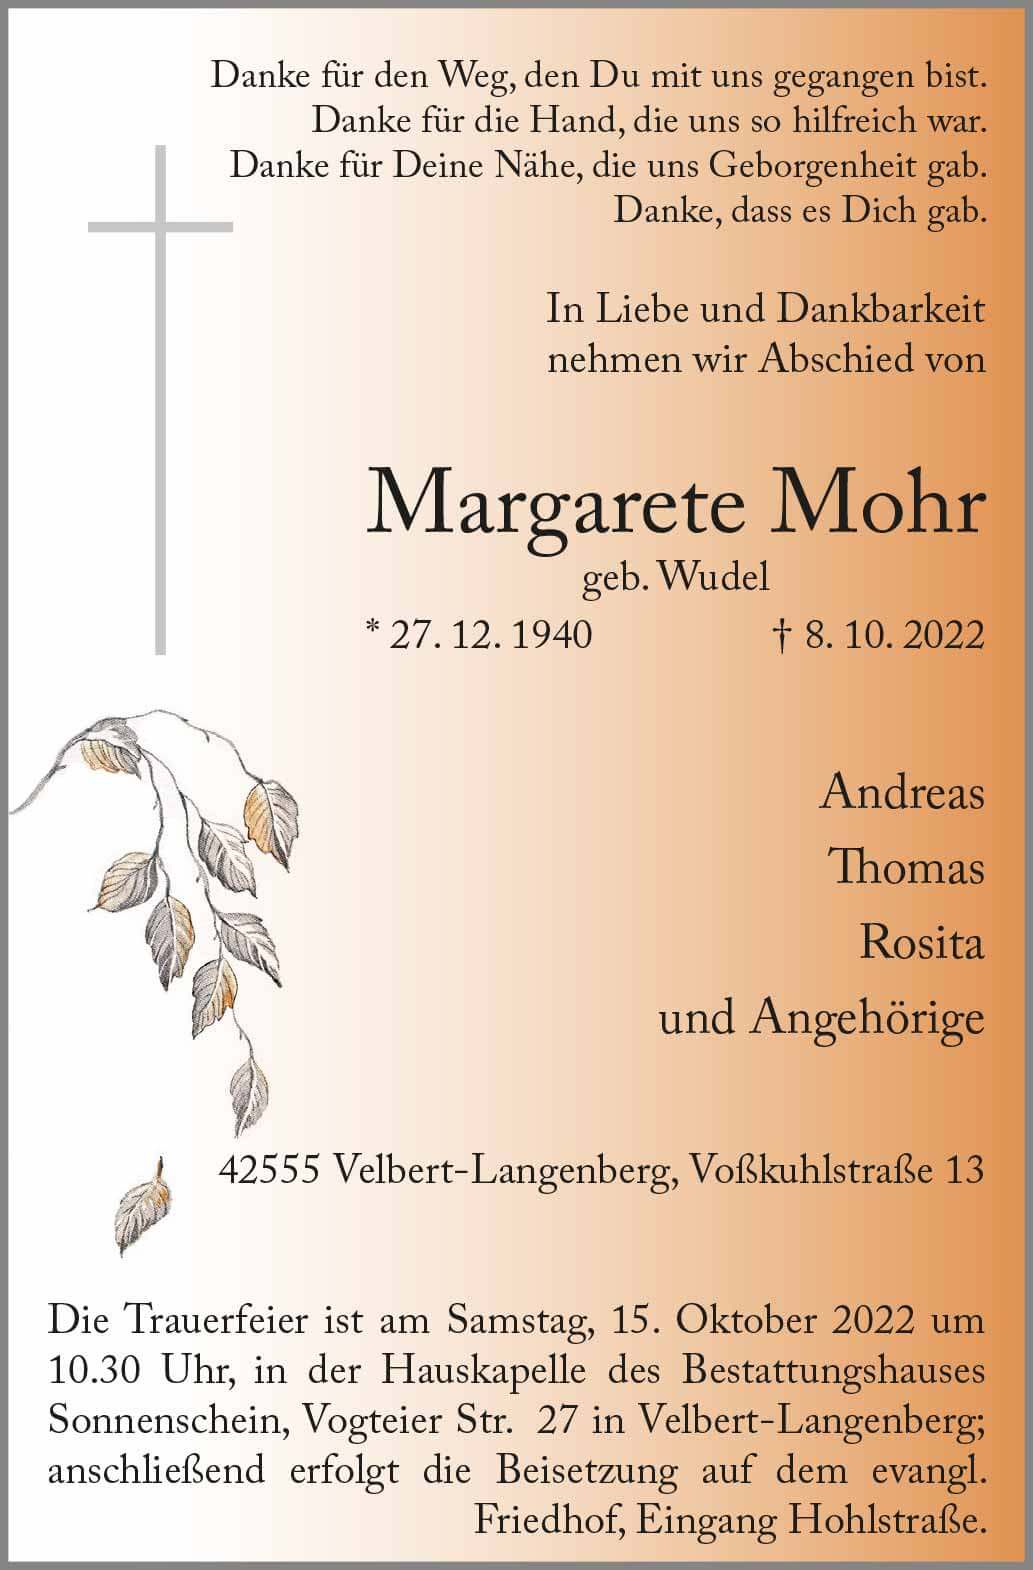 Margarete Mohr † 8. 10. 2022